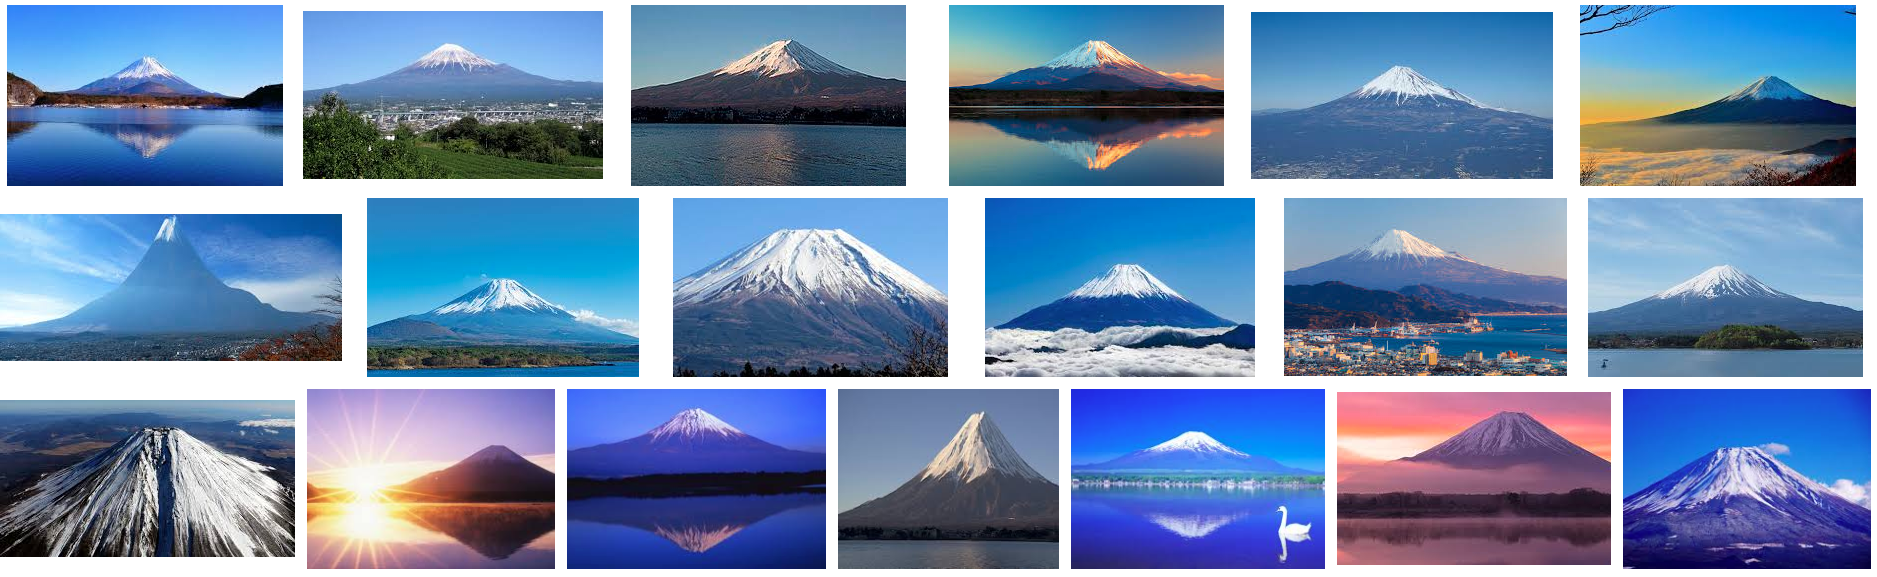 【準備編】おら、山さ行ってくるだ。〜はじめての富士登山〜